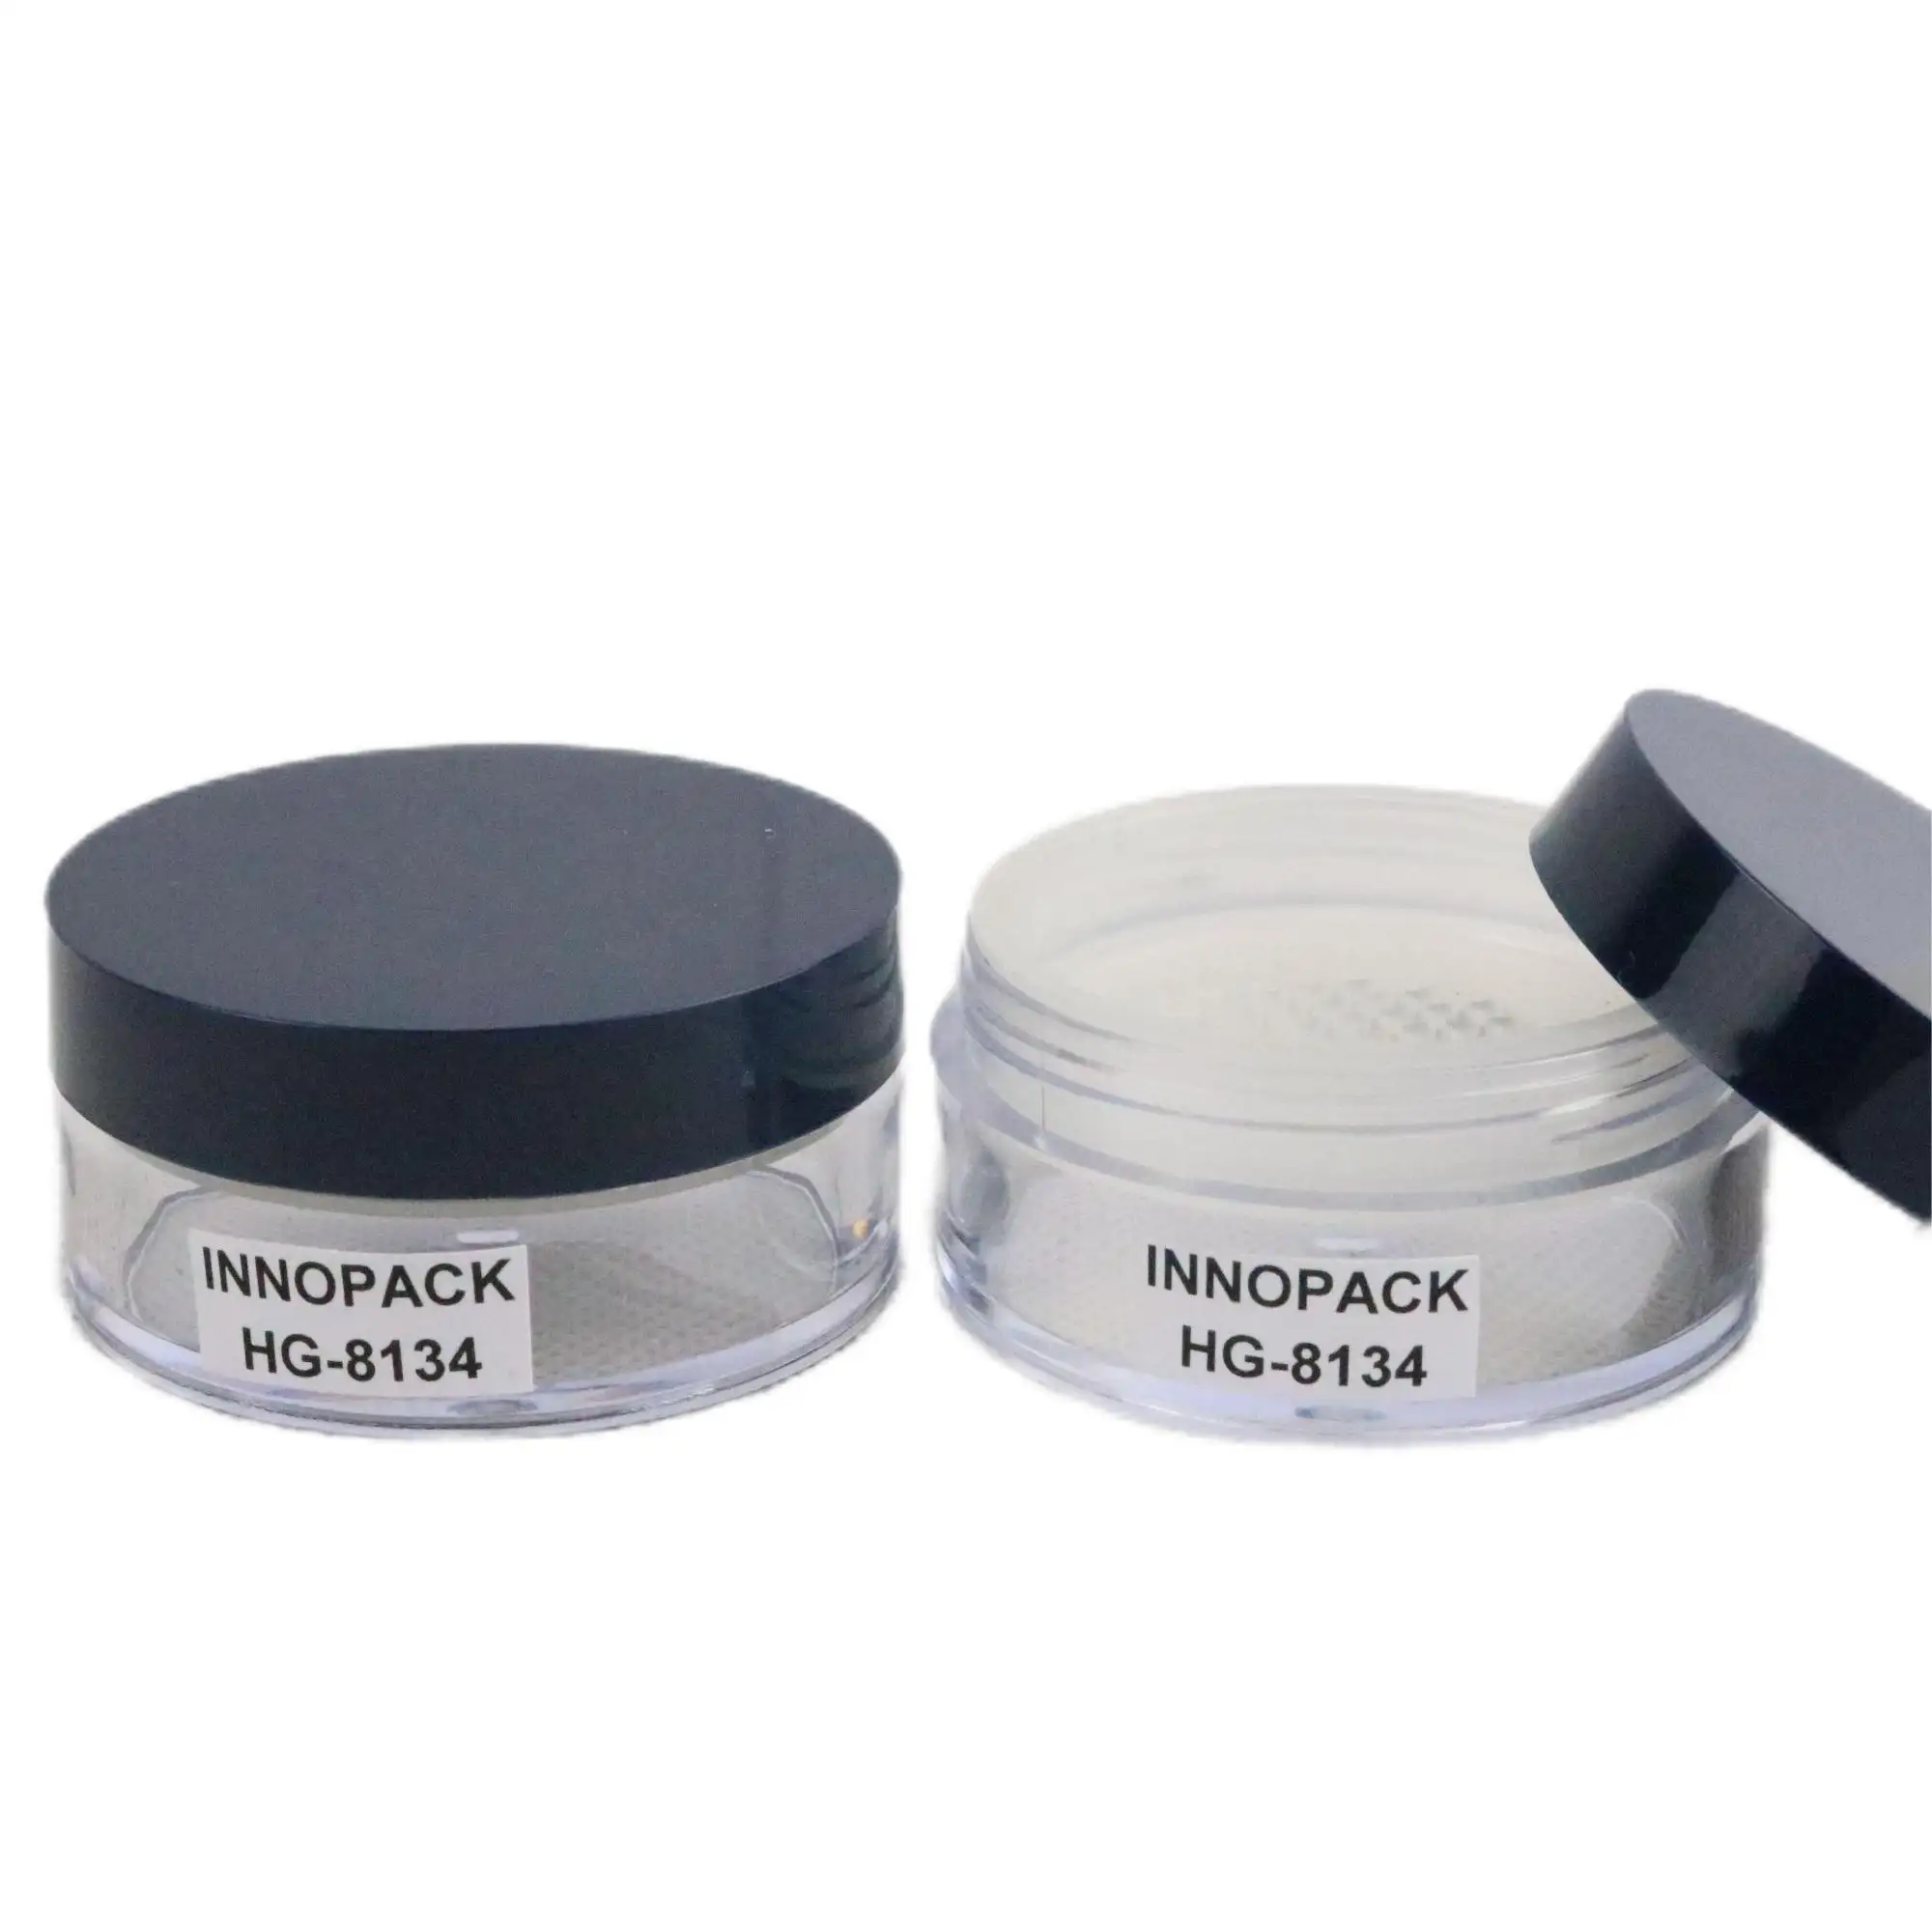 Contenitore di plastica di lusso per viso cosmetico in polvere contenitore contenitore in polvere con setaccio vuoto compatto sciolto in PVC nero riciclabile accettare